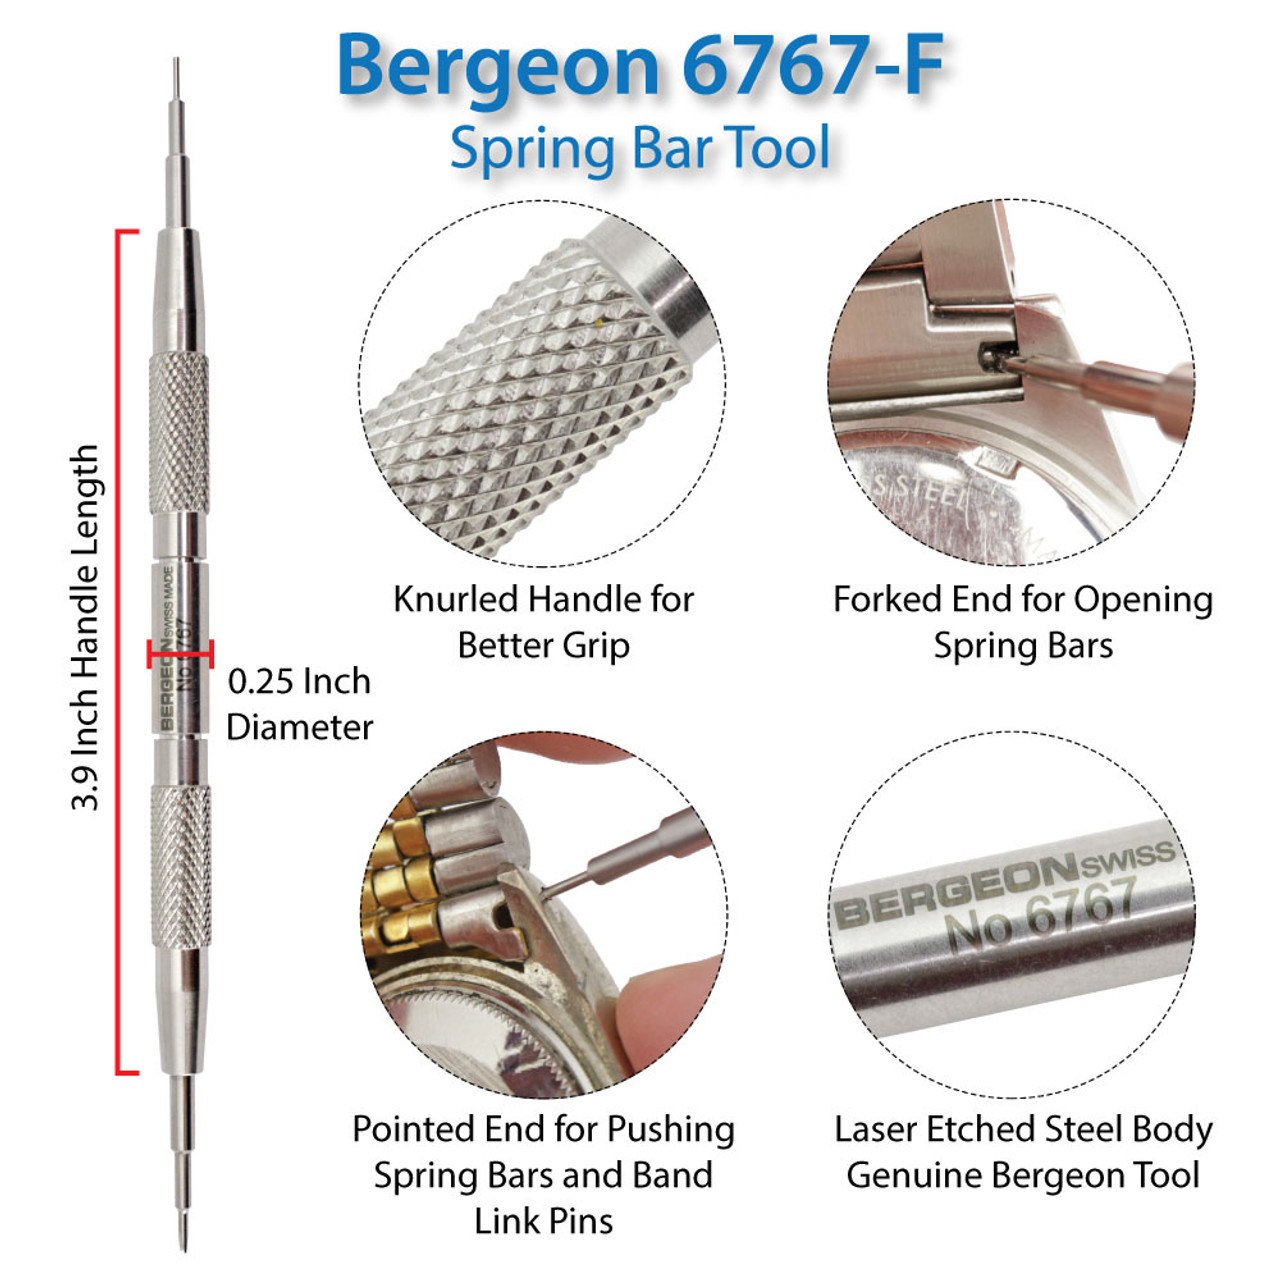 Bergeon 6767-F Spring Bar Tool